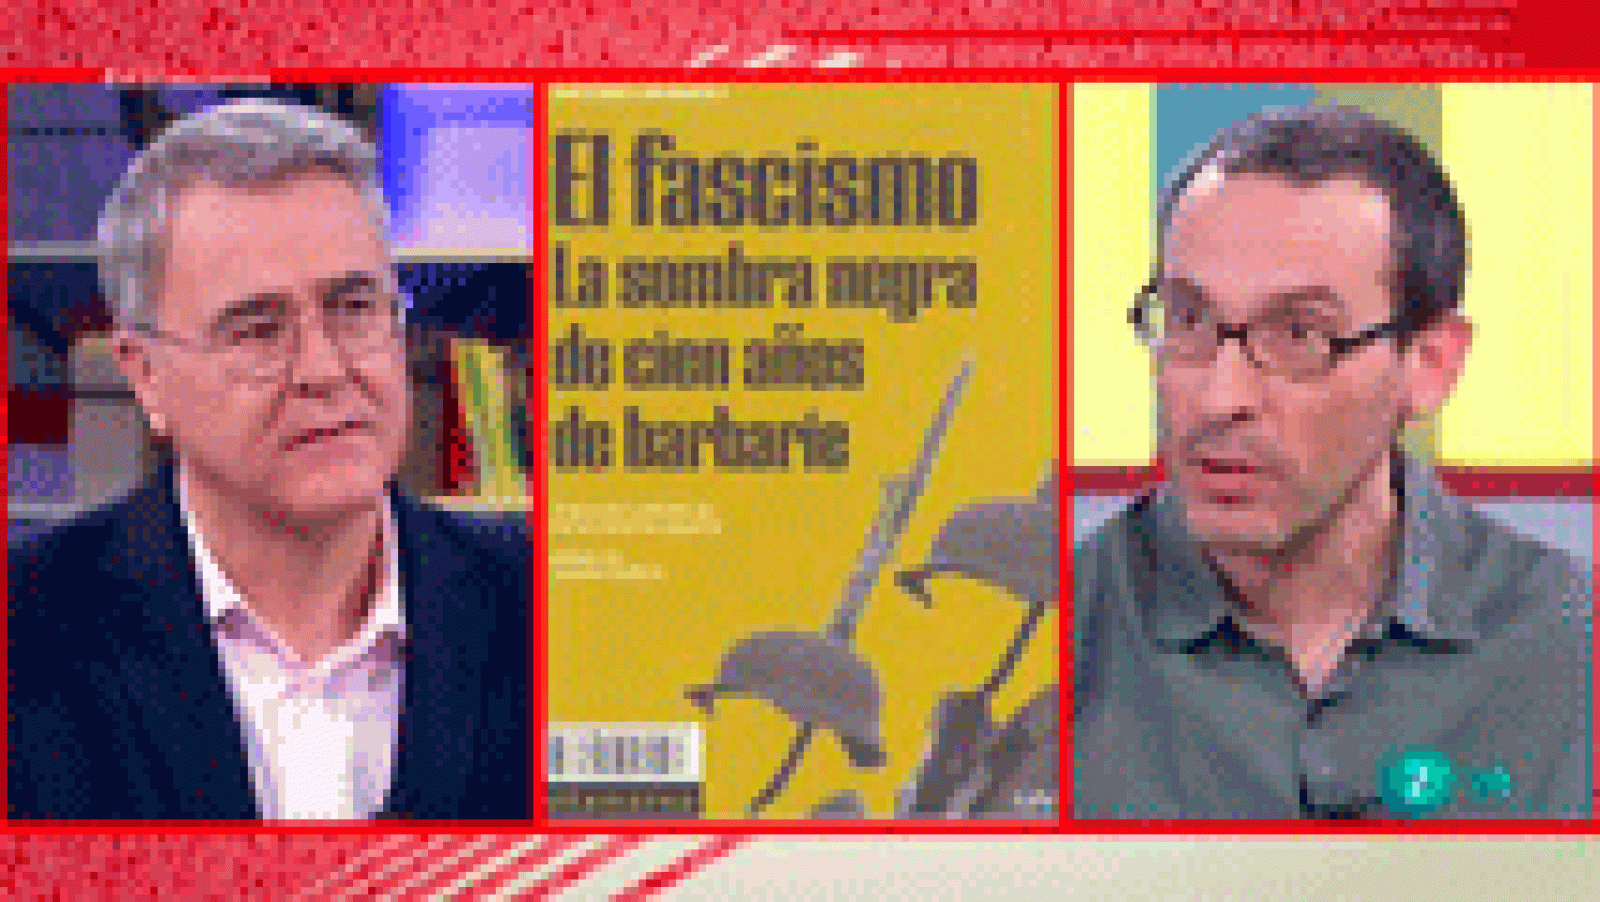 La aventura del saber. 'El fascismo' con César Rendueles ciudadania